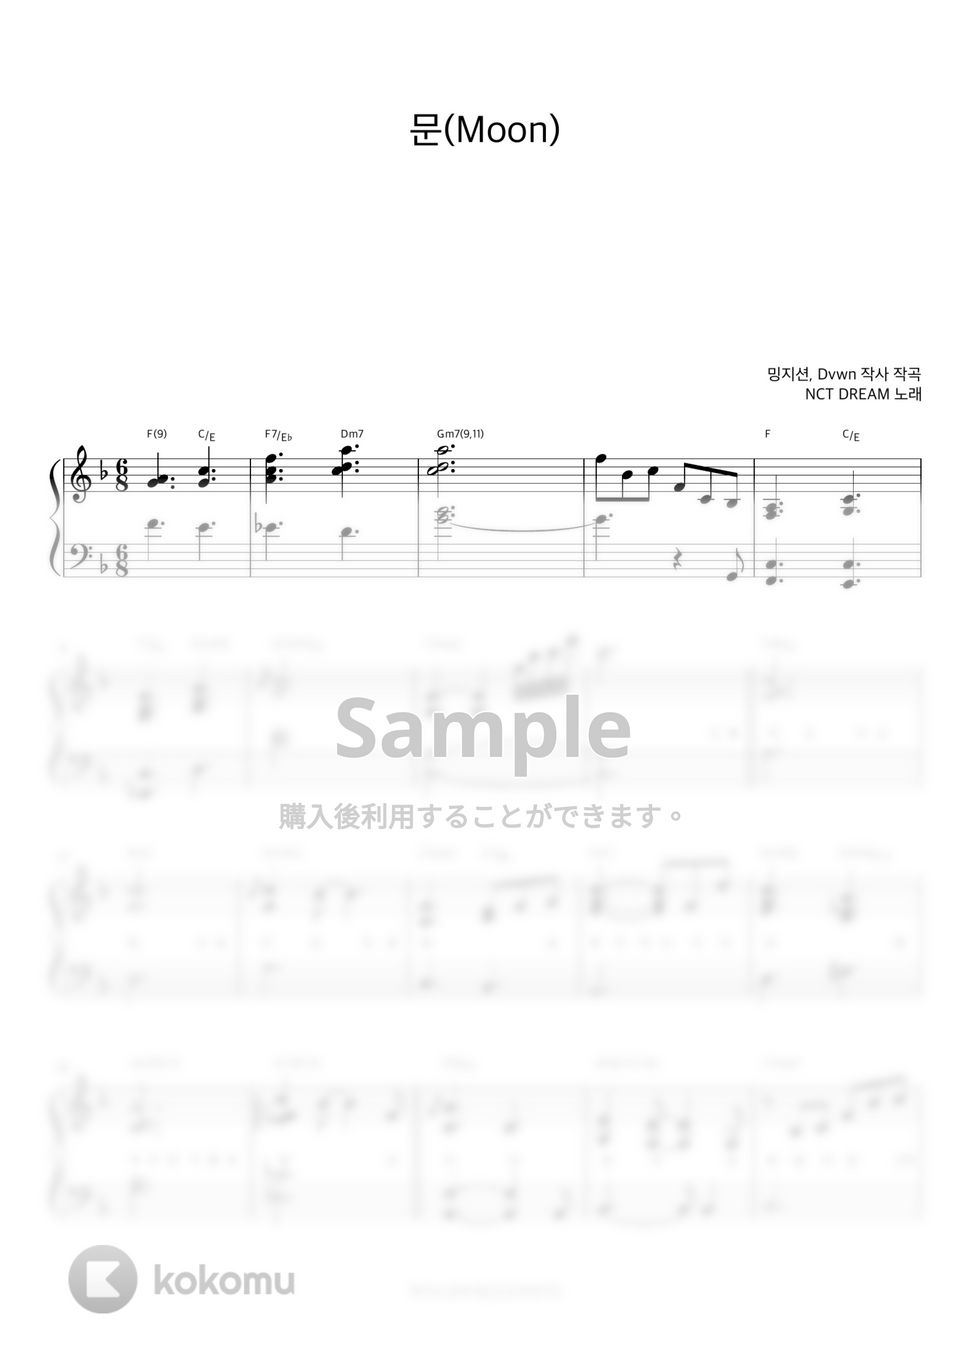 NCT DREAM - Moon (伴奏楽譜) by 피아노정류장